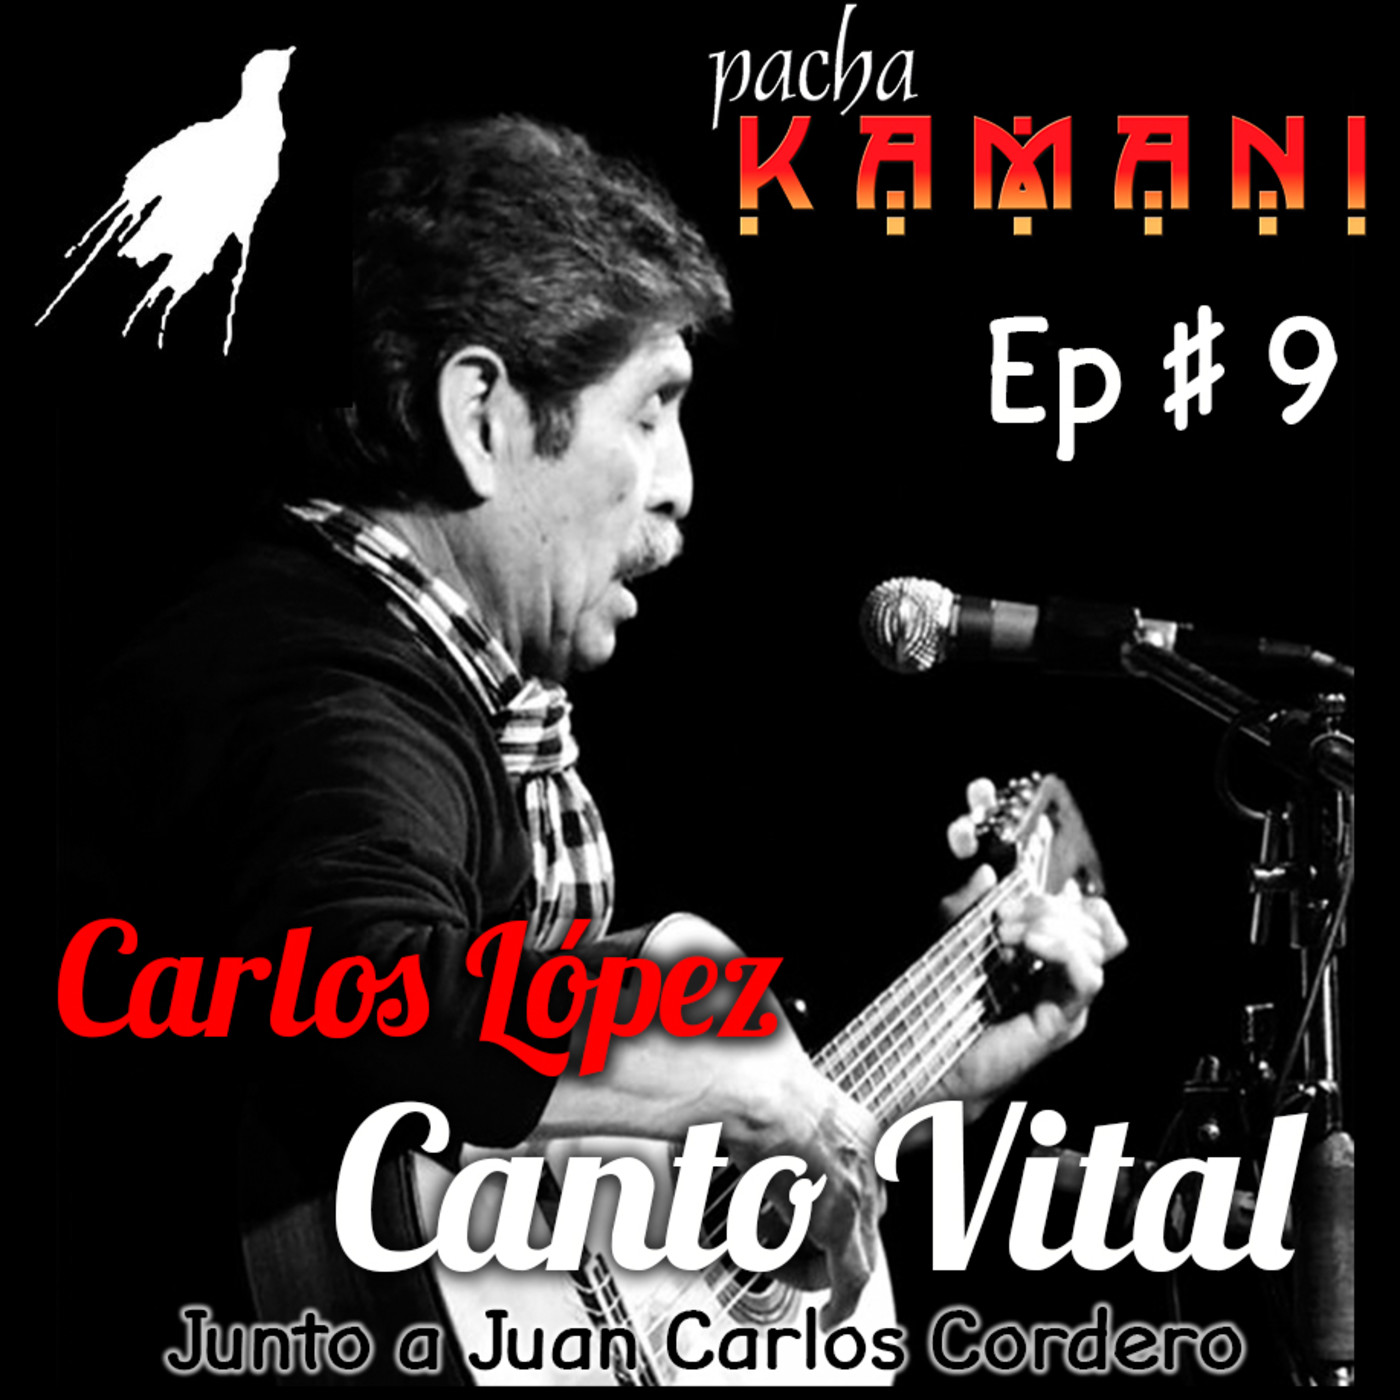 Ep # 09. Homenaje al Canto Vital de Carlos López, trovador boliviano (04/2020)